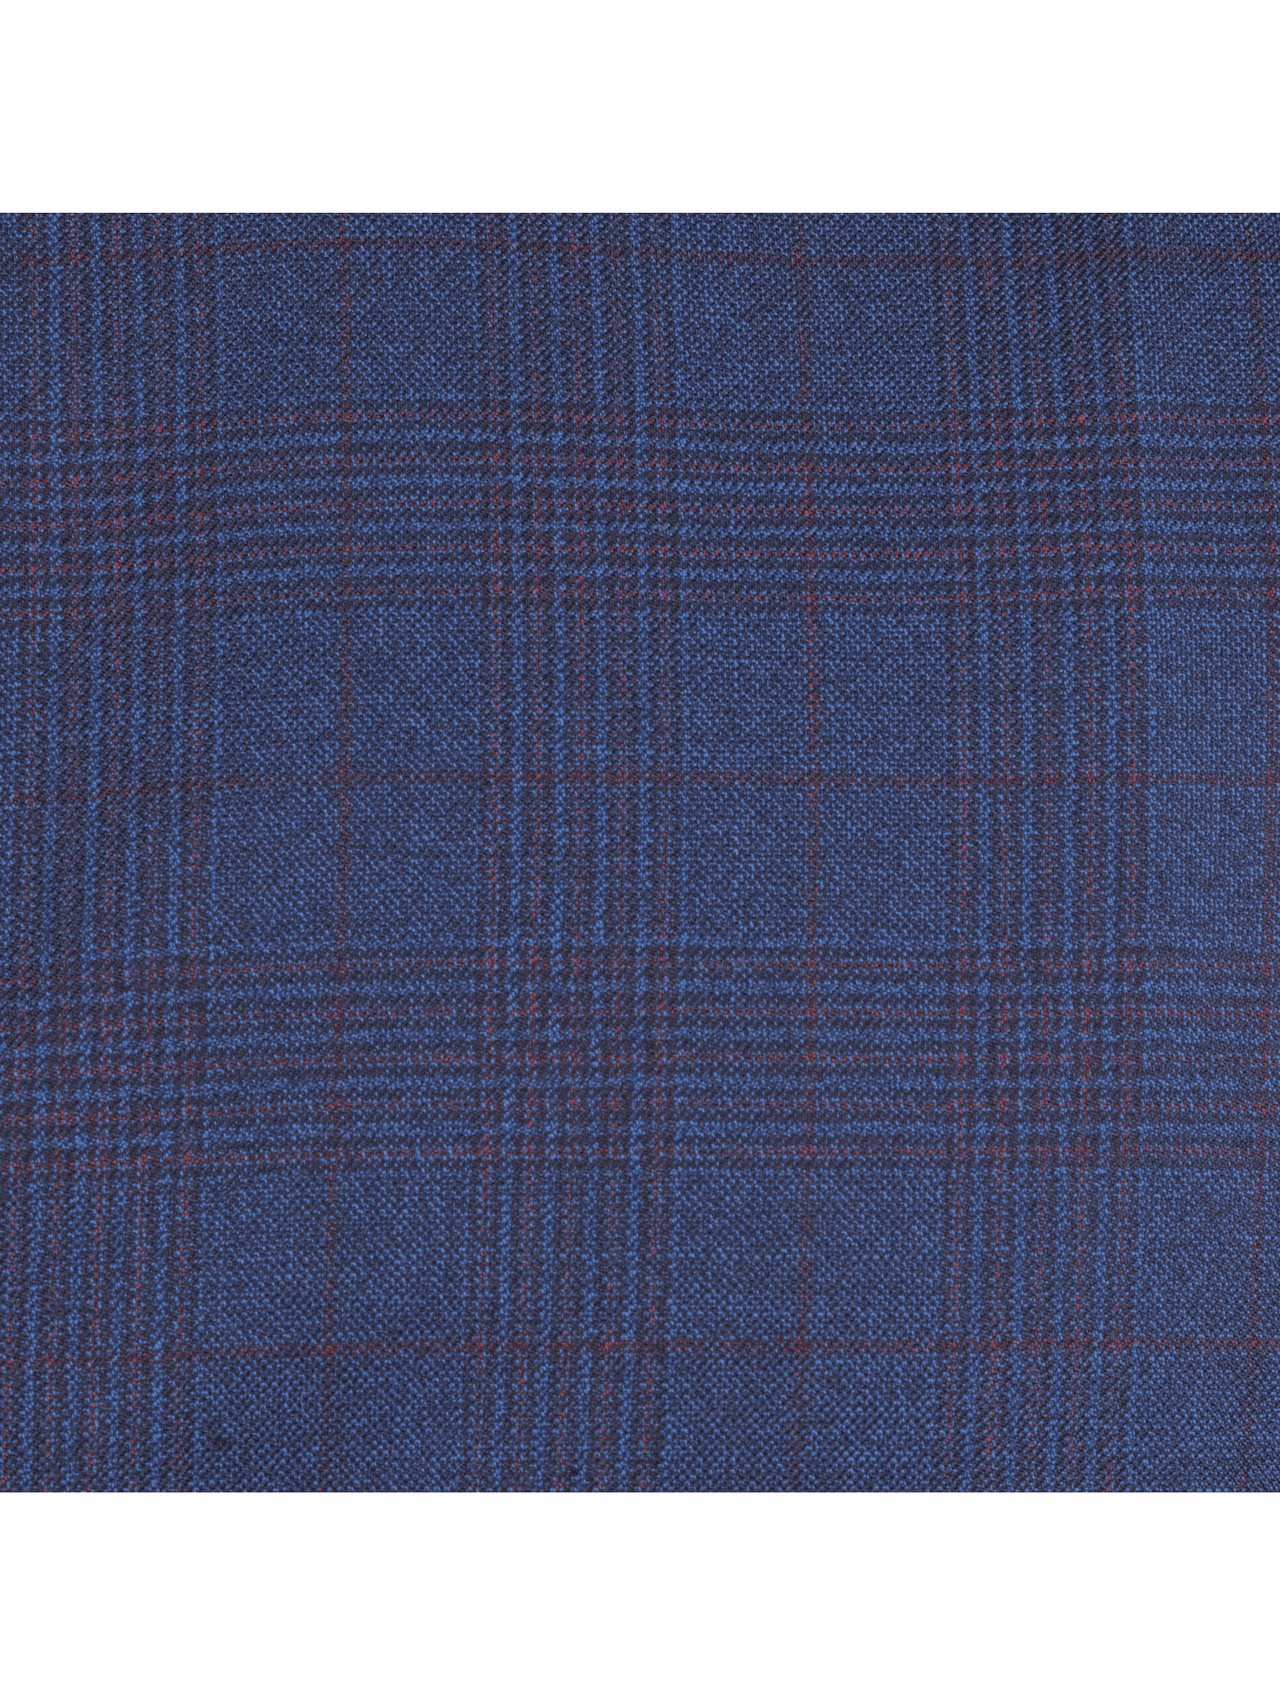 Centrion SUITS Centrion Mens Blue Plaid Regular Fit 100% Wool 2 Button Suit